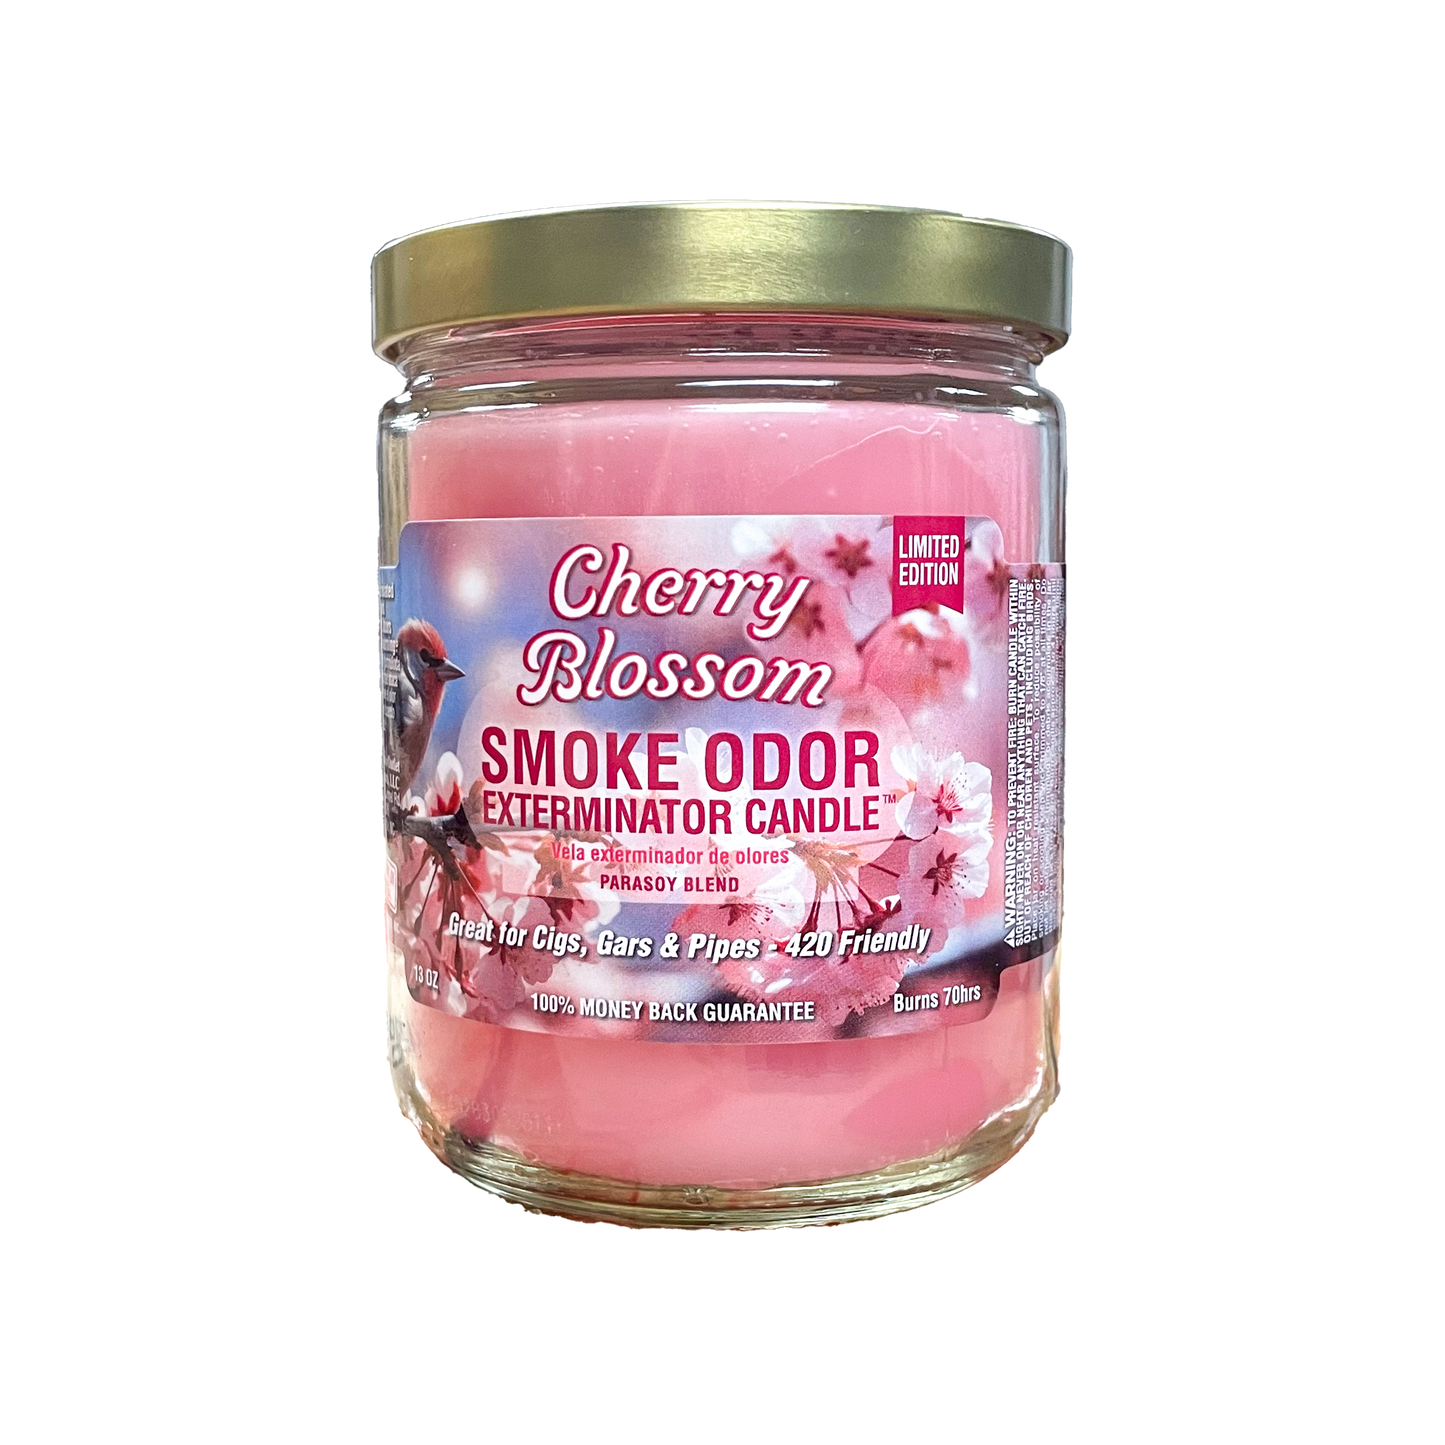 Smoke Odor Candle 13oz Jar - Cherry Blossom